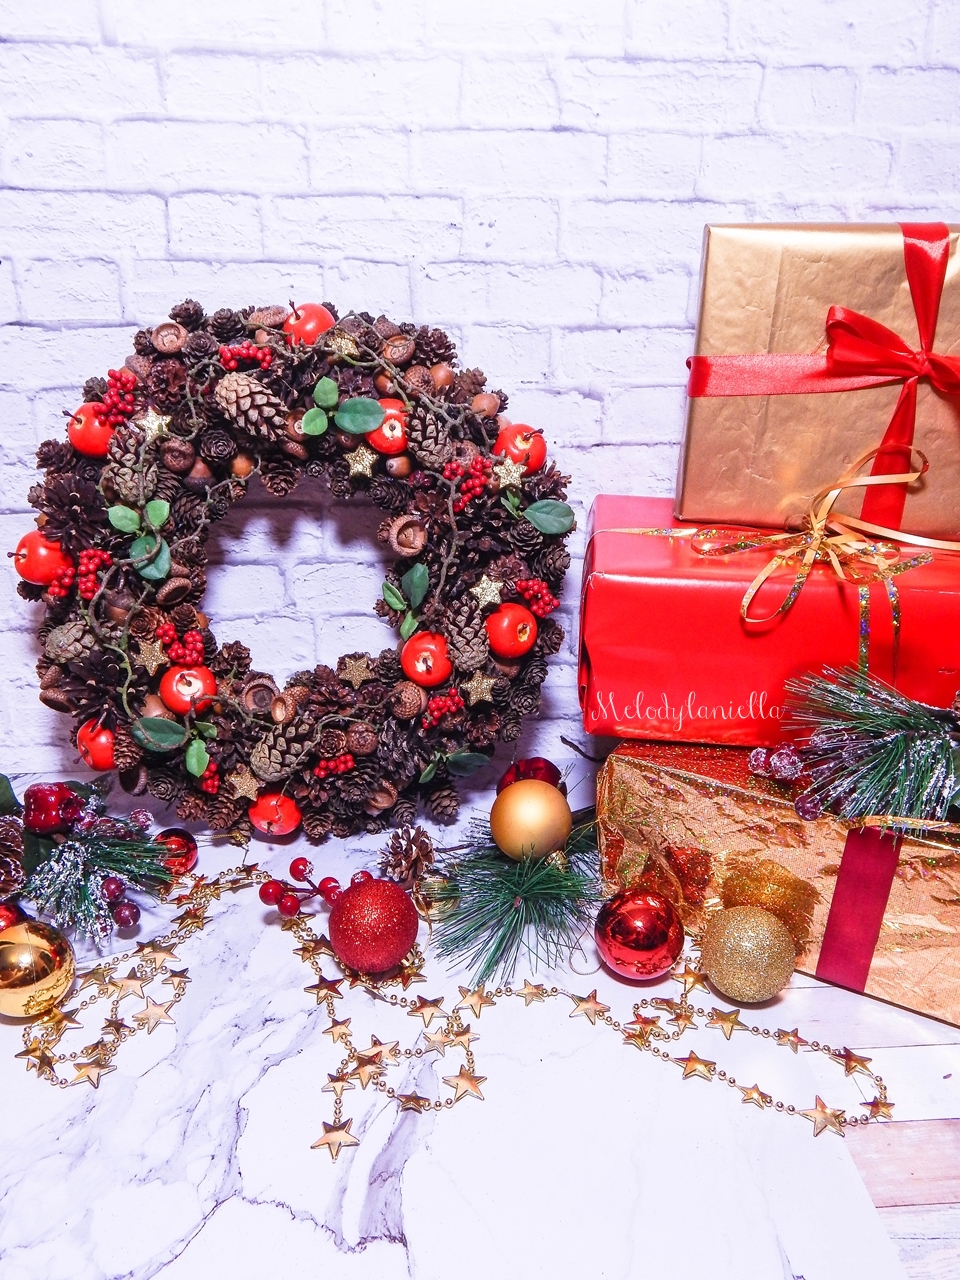 10 prezenty z okazji Bożego Narodzenia w świątecznym klimacie tradycyjne wieńce świąteczne deco bazar pomysł na przent dla babci dziadka pod choinkę ozdoby świąteczne do domu pracy biura na gwiazdkę